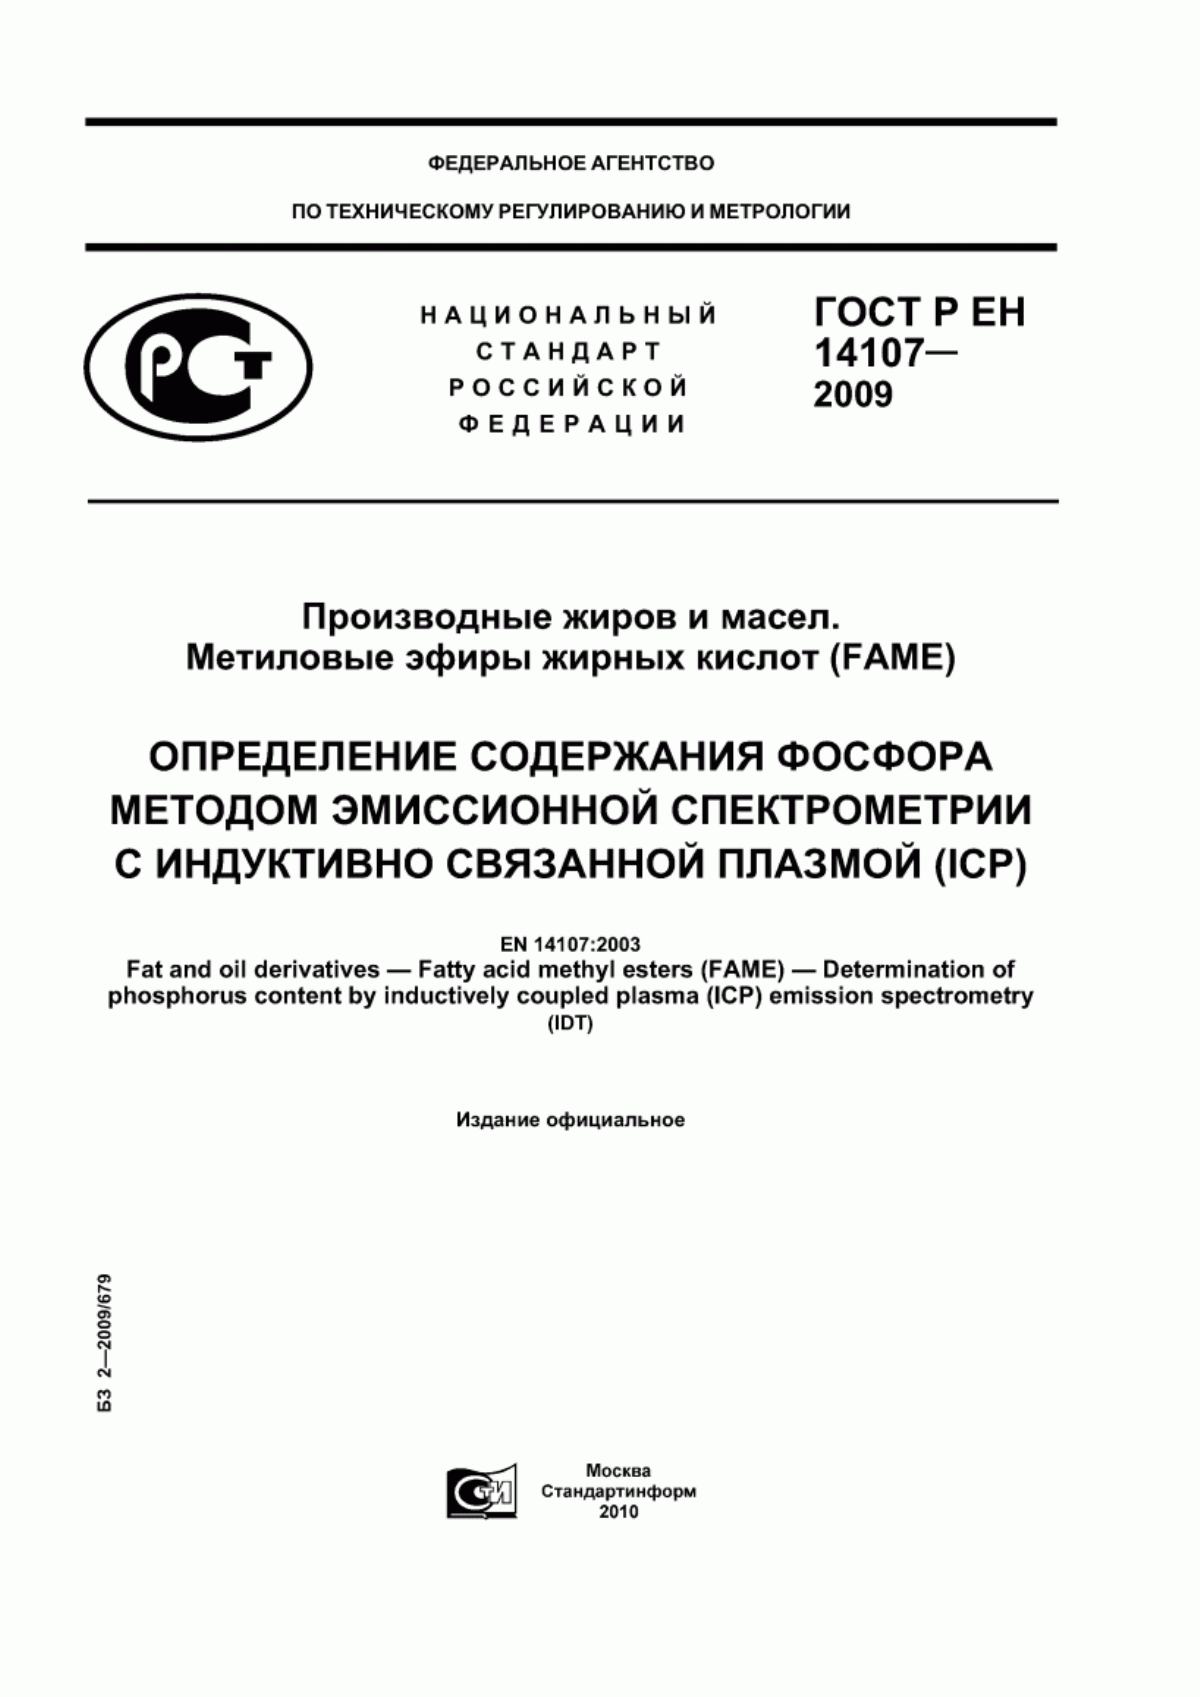 ГОСТ Р ЕН 14107-2009 Производные жиров и масел. Метиловые эфиры жирных кислот (FAME). Определение содержания фосфора методом эмиссионной спектрометрии с индуктивно связанной плазмой (ICP)